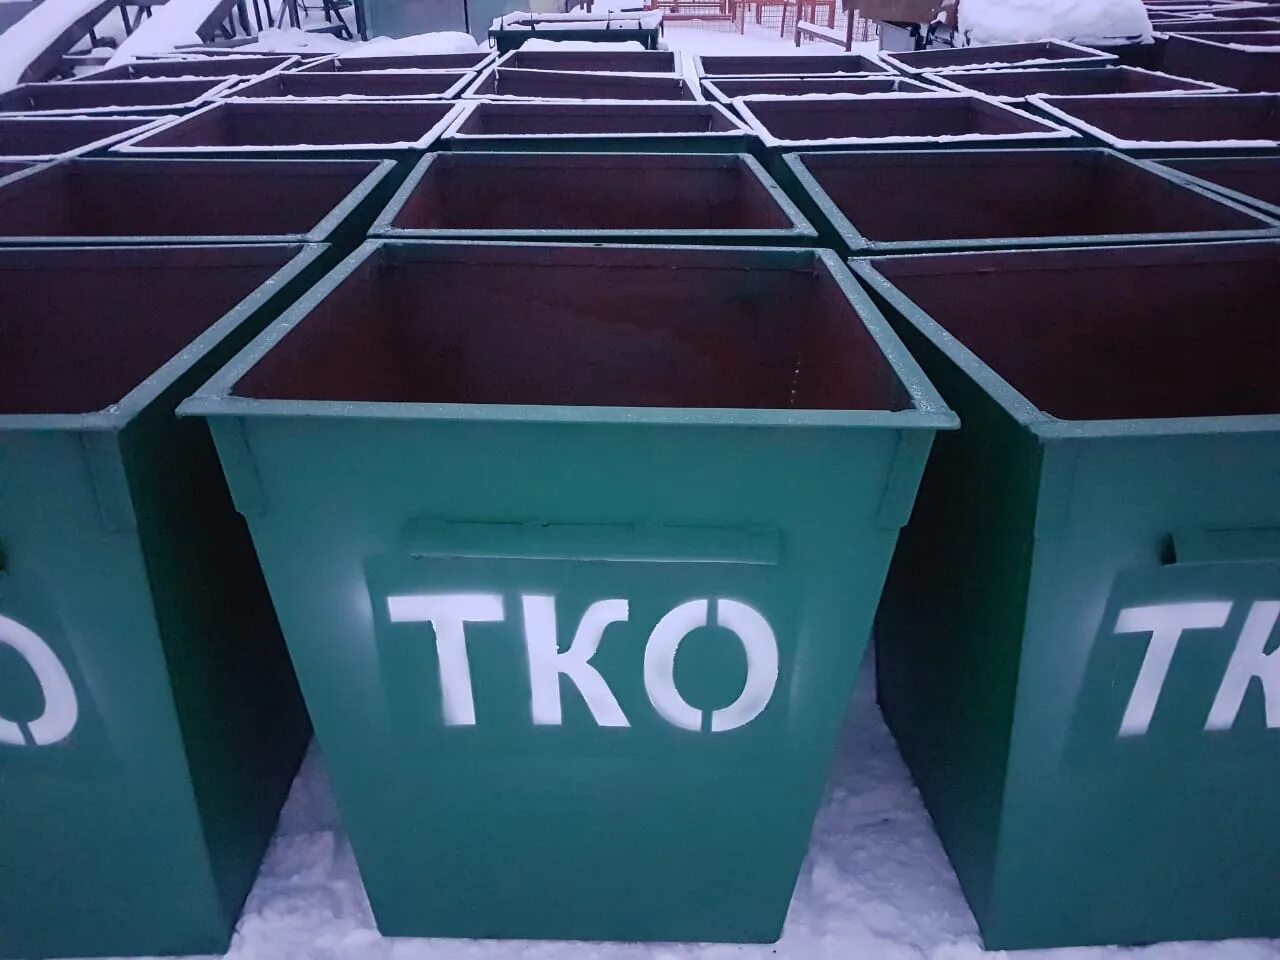 Триада тко 3.0 купить. ТБО И ТКО на мусорные контейнеры. Контейнер для ТКО 1.1. Таблички ТКО И ТБО. Контейнеры 7,6 для ТКО.